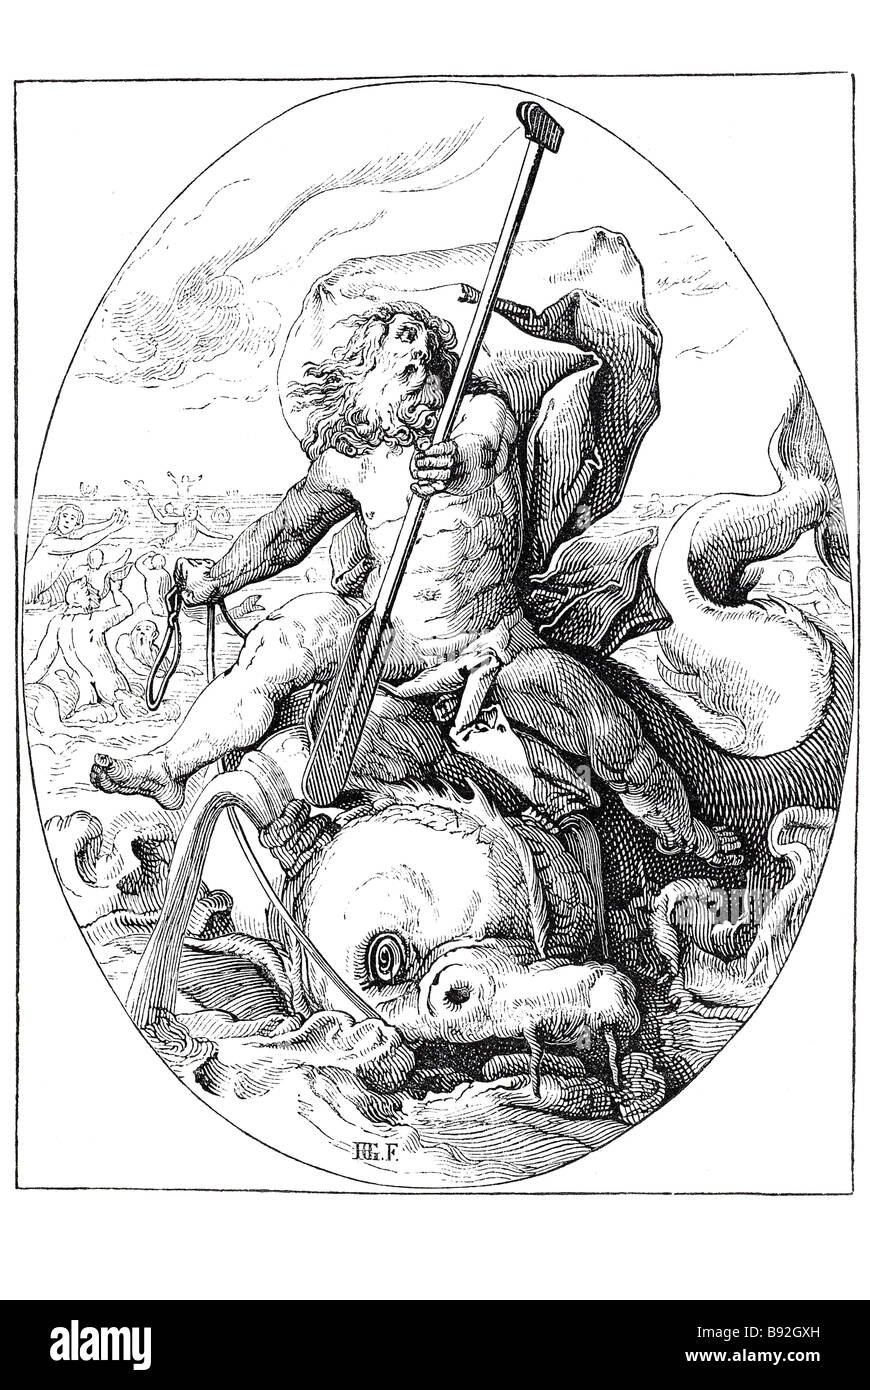 Serpent de mer monstre bête dieu Poséidon roi mer poissons sirènes people riding de l'eau dans la mythologie grecque, Poséidon était le dieu de l'e Banque D'Images